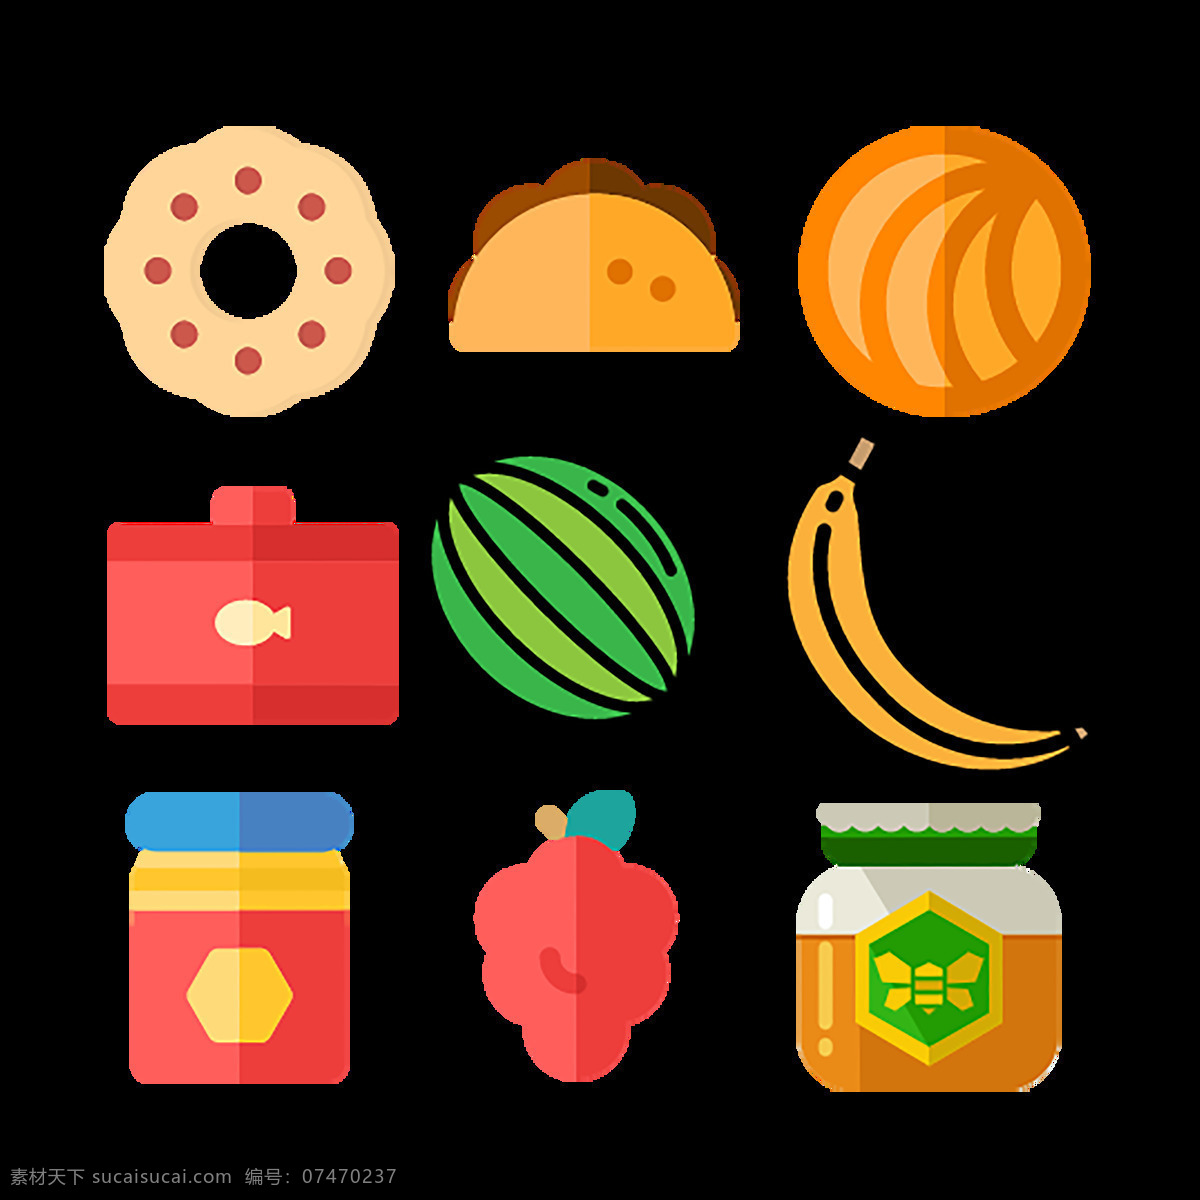 彩色 蔬菜 图标 美食 健康 水果 橙 柠檬 奶酪 鸡蛋 葡萄 菠萝 番茄 食品 胡萝卜 生菜 手绘 食物 饮品